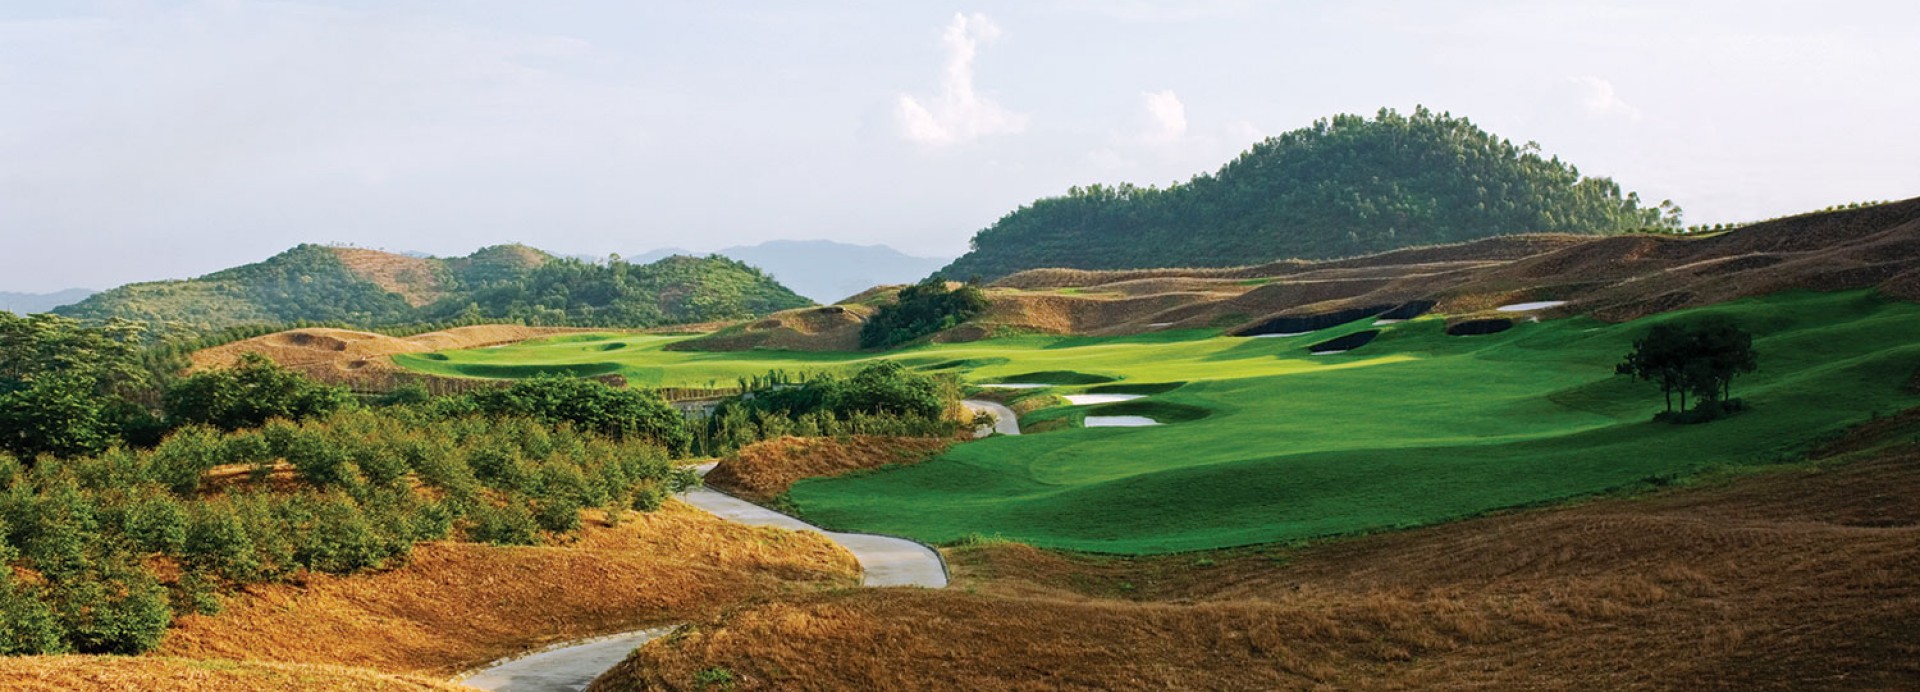 Mission Hills - Shenzhen - Pete Dye Course  | Golfové zájezdy, golfová dovolená, luxusní golf